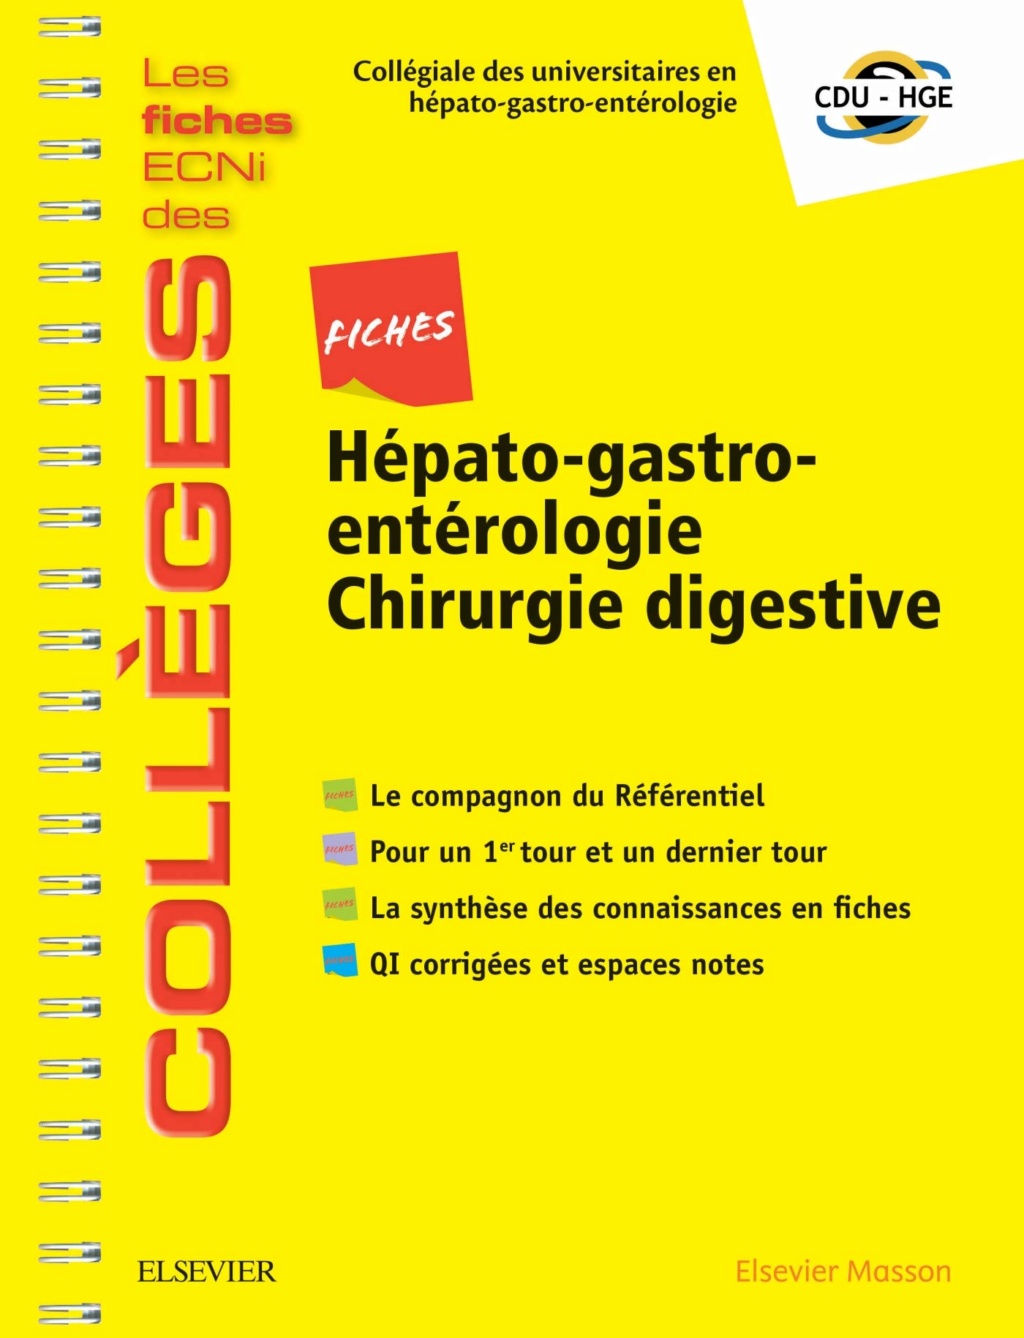 [résolu]Livres Médicales - Fiches Hépato-gastro-entérologie Chirurgie digestive: Les fiches ECNi et QI des Collèges 2019 - Page 5 Fiches11